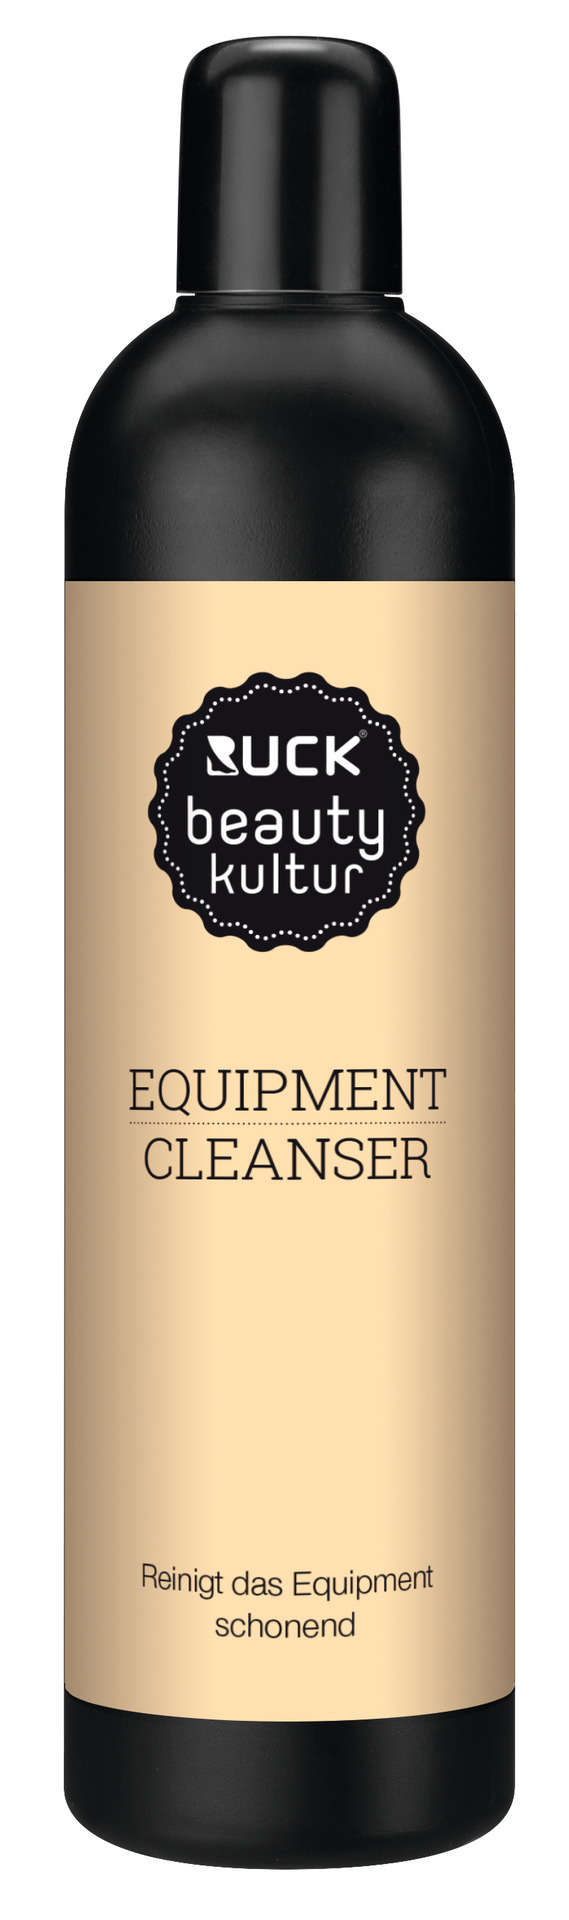 RUCK beautykultur Equipment Cleanser | 200 ml